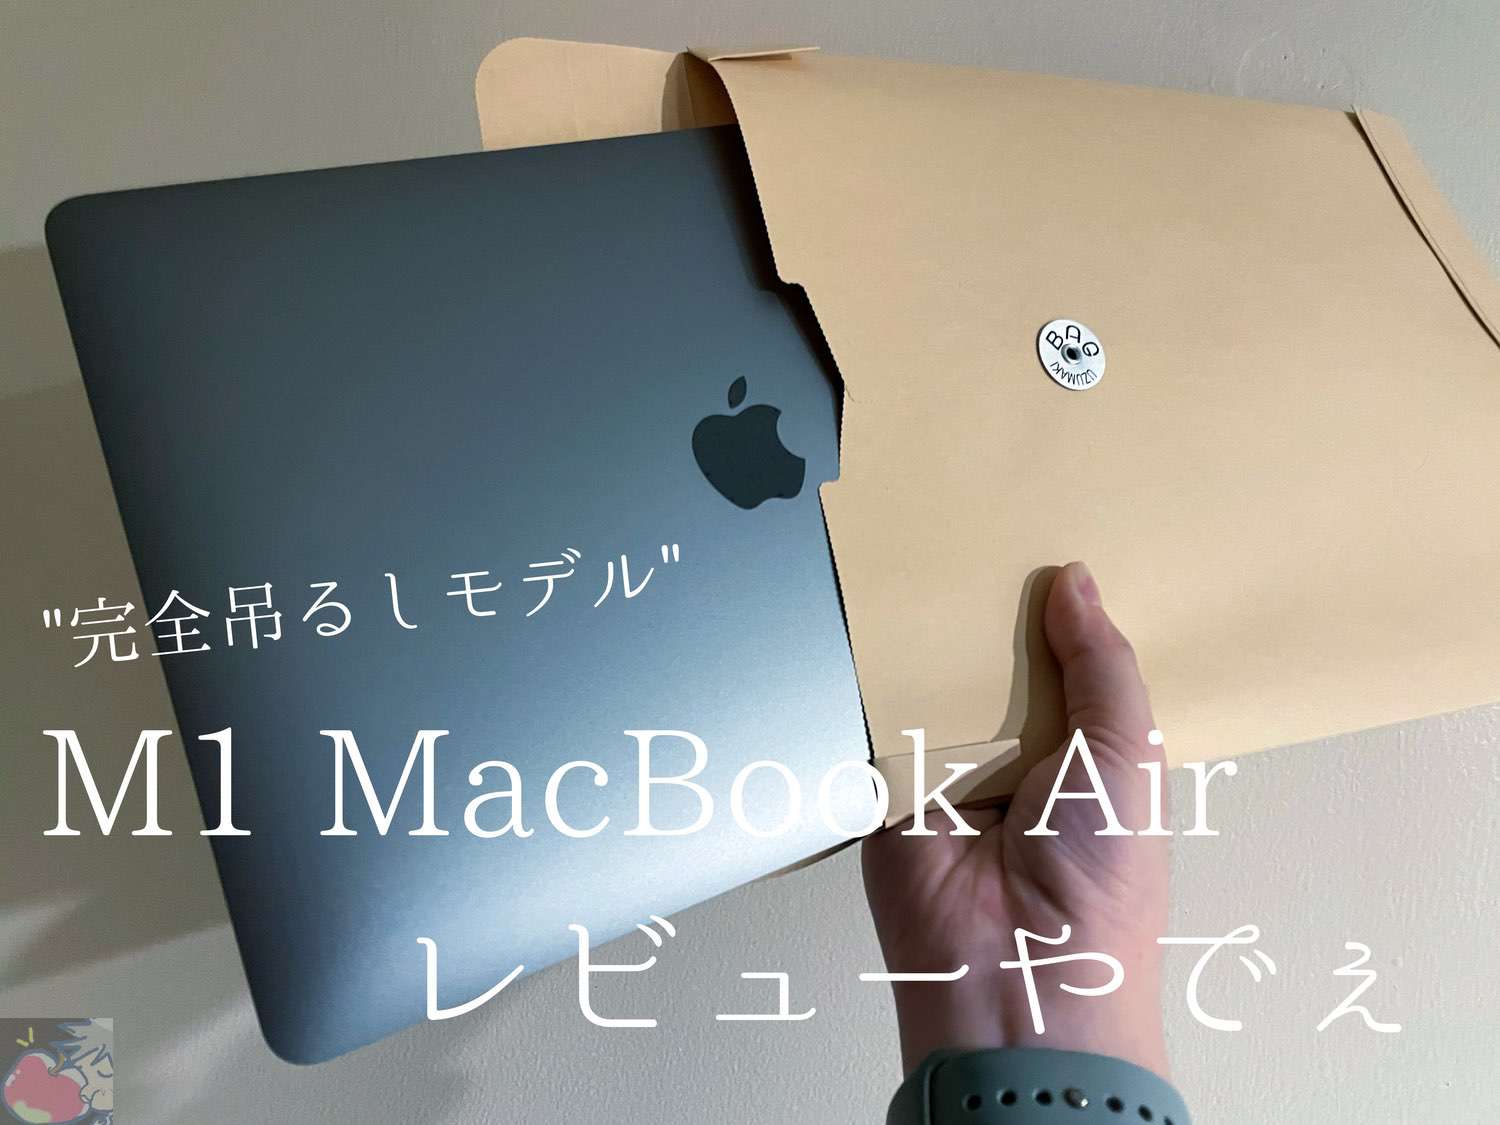 M1 MacBook Air完全吊るしモデルレビュー「確かに凄いけど、あまり言われてないデメリットもある」